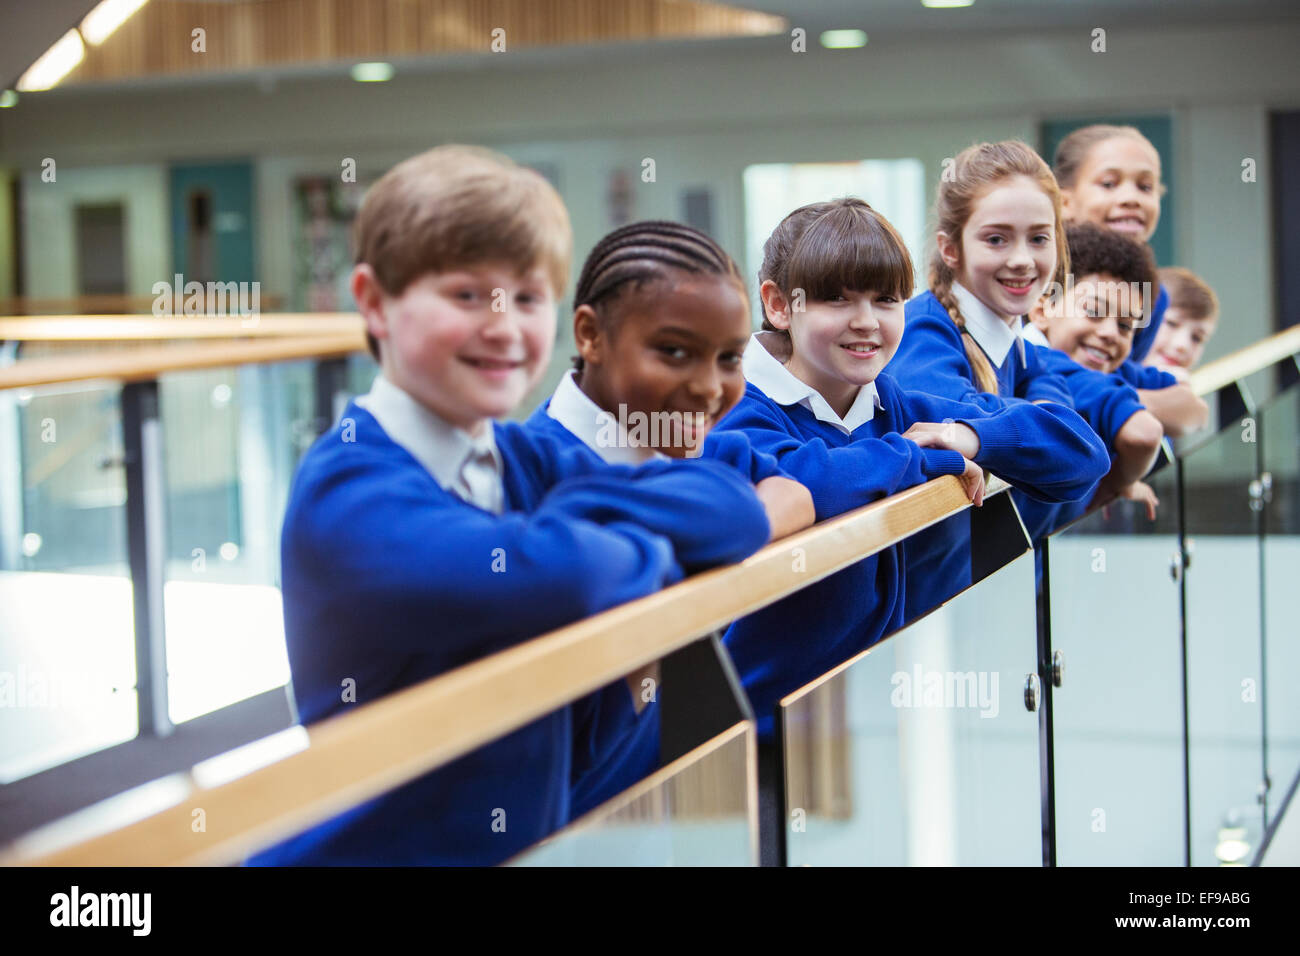 Portrait of elementary school children wearing blue school uniforms standing in school corridor Stock Photo